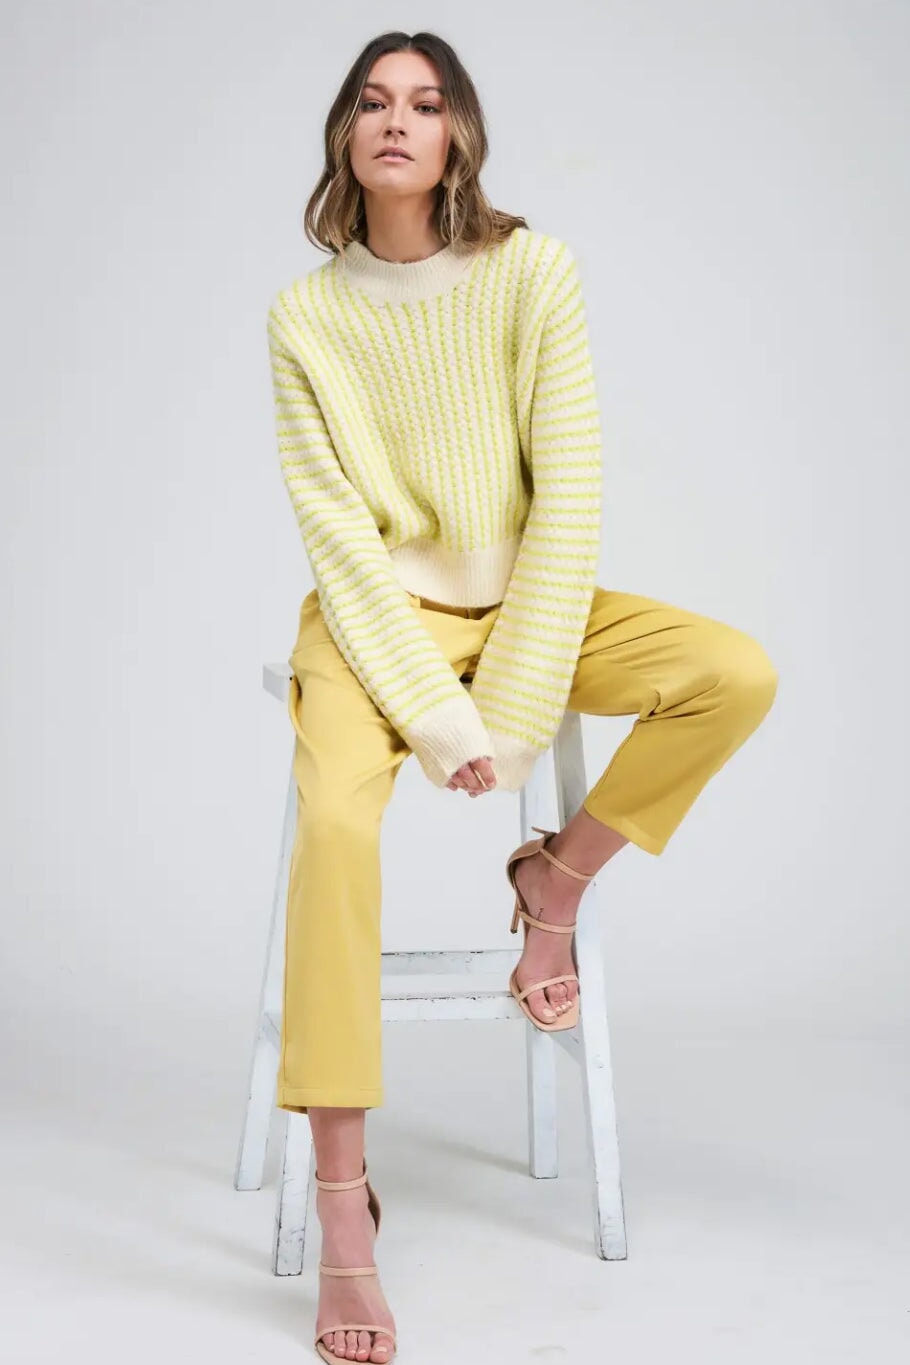 Joa Stripe Sweater Top SWEATER FLAT WHITE 